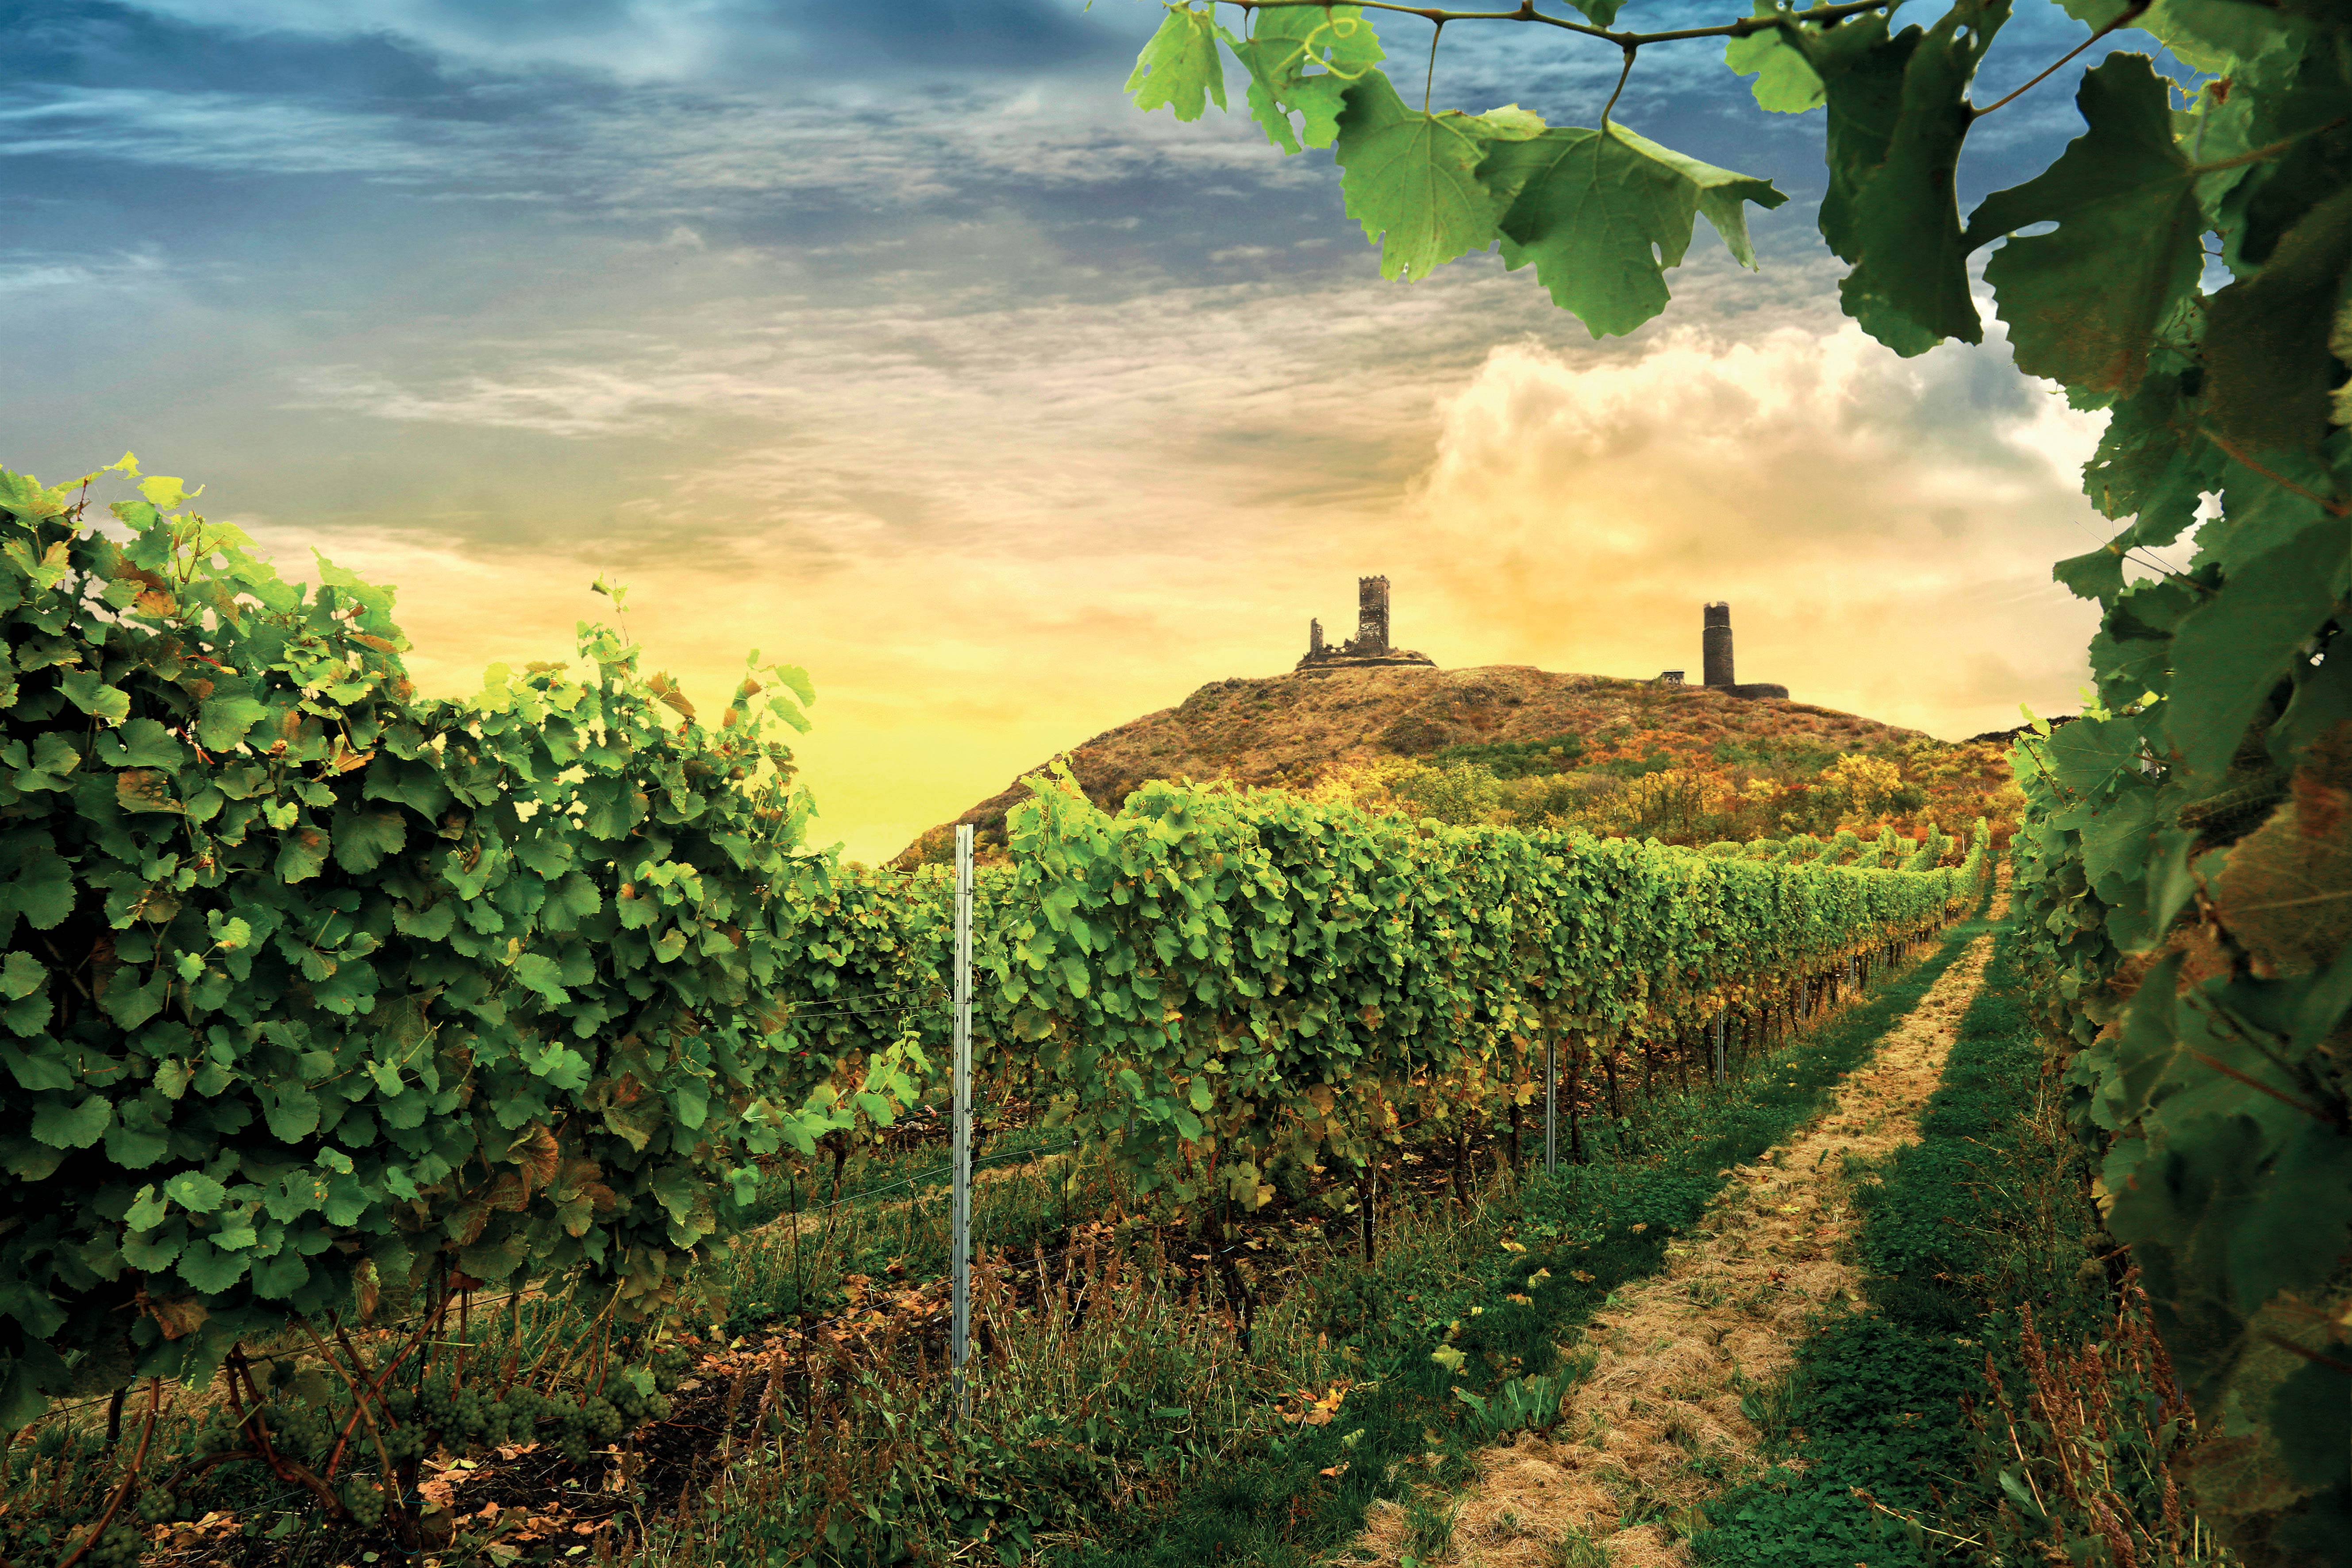 
Zámecké vinařství Třebívlice: Elegantní vína ze severu